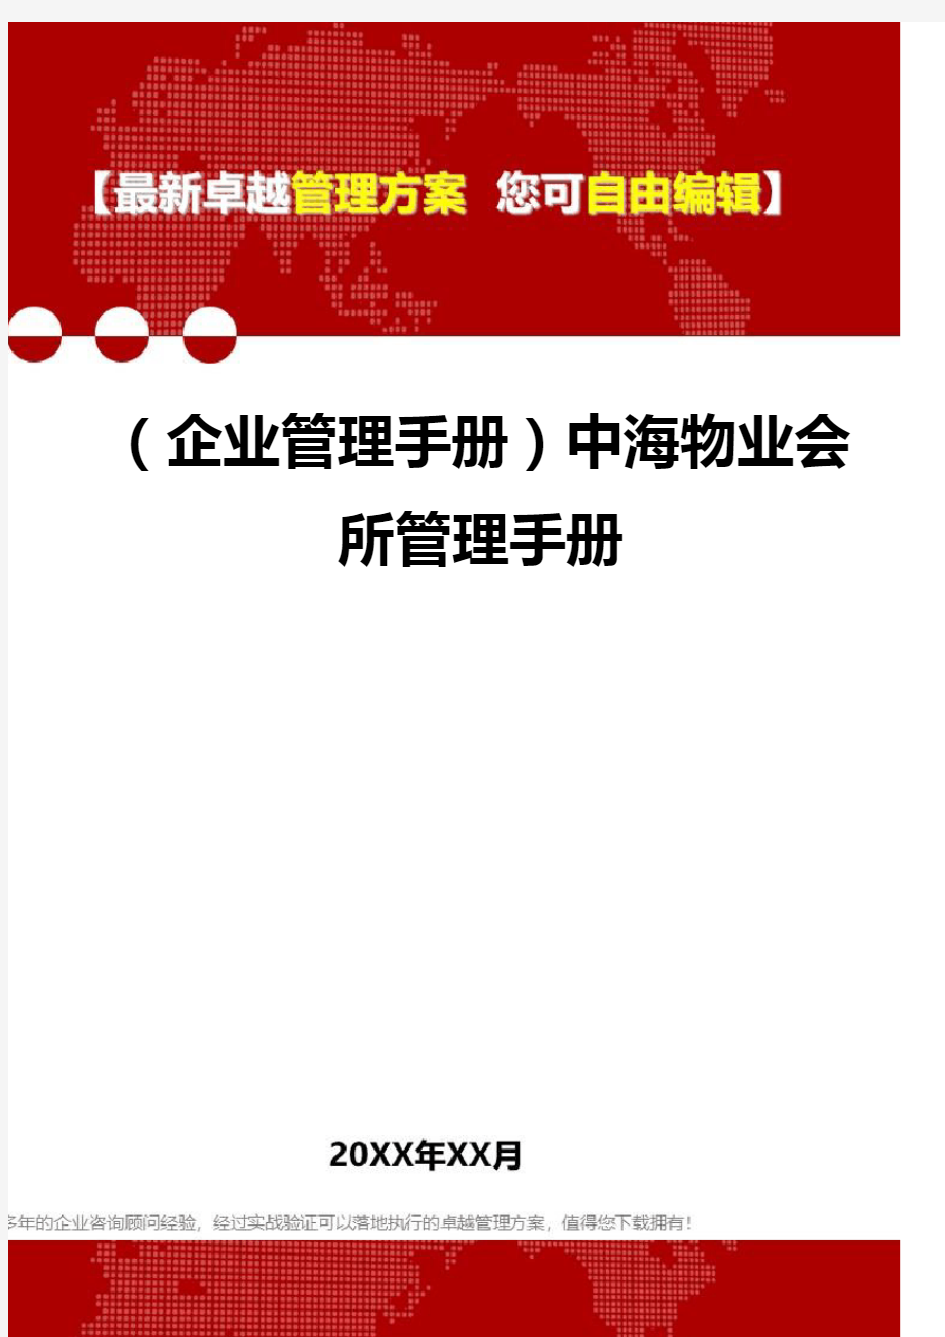 2020年(企业管理手册)中海物业会所管理手册